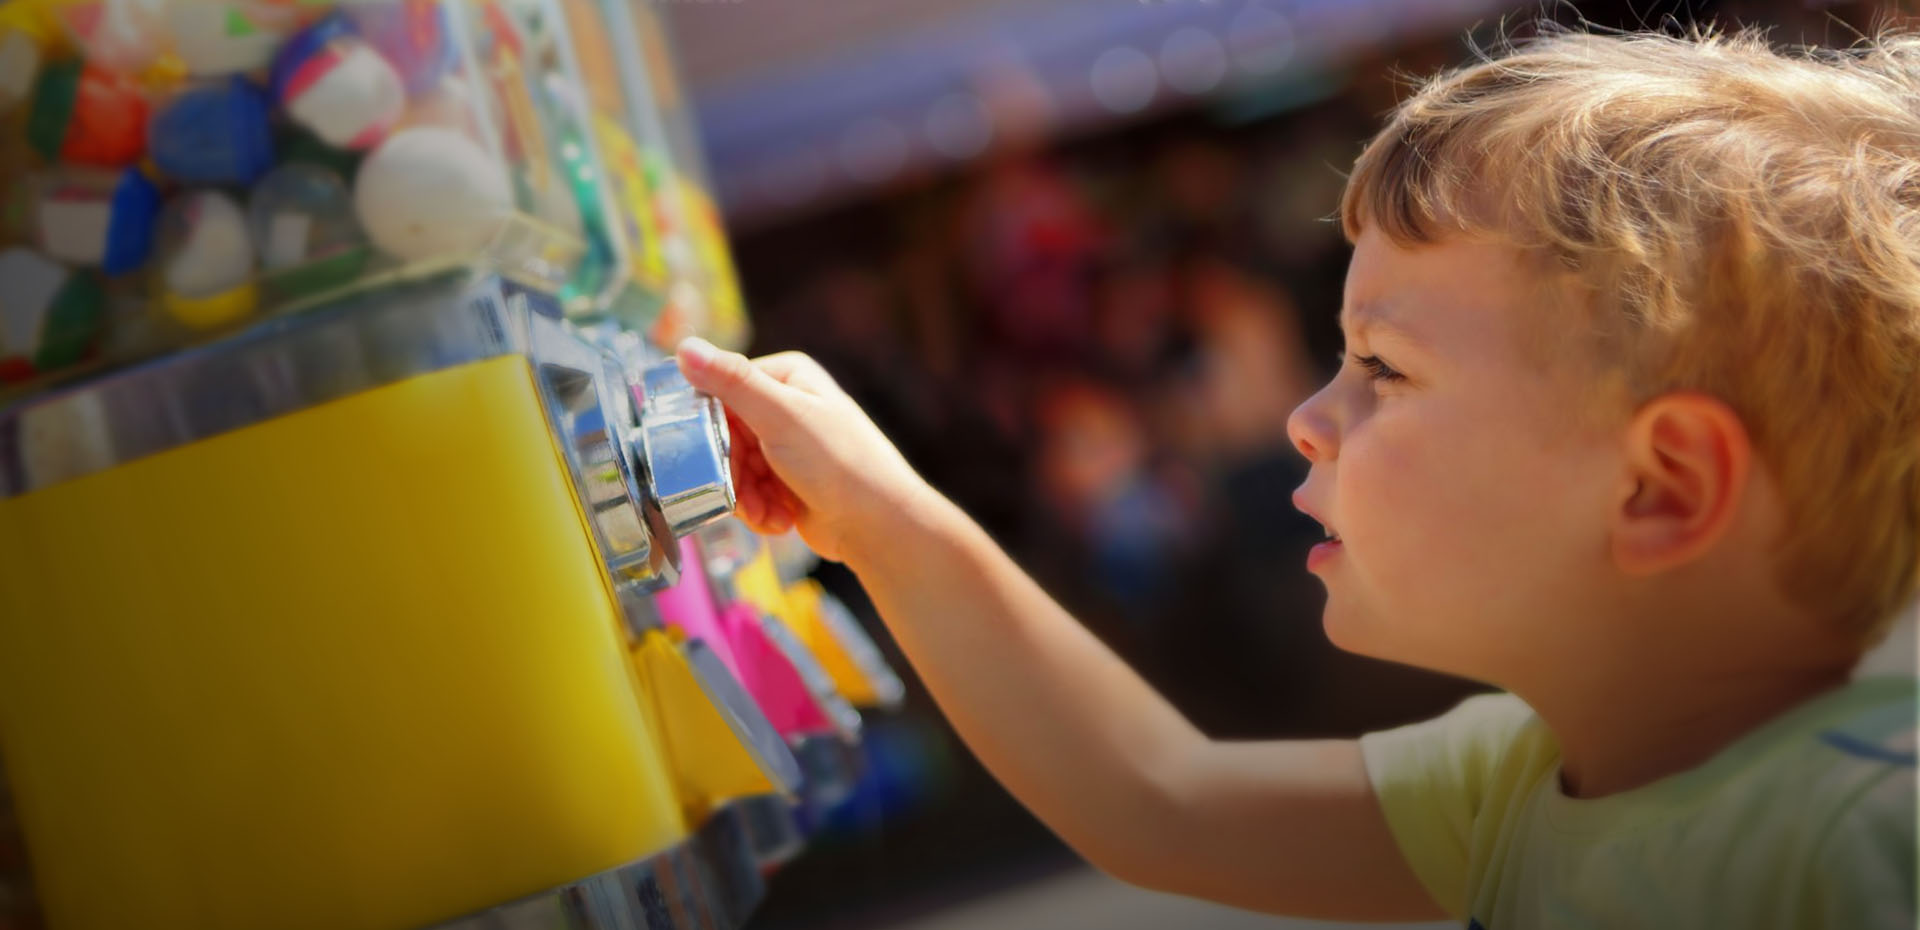 Energy Efficient Toys Vending Machines Market Harbrough